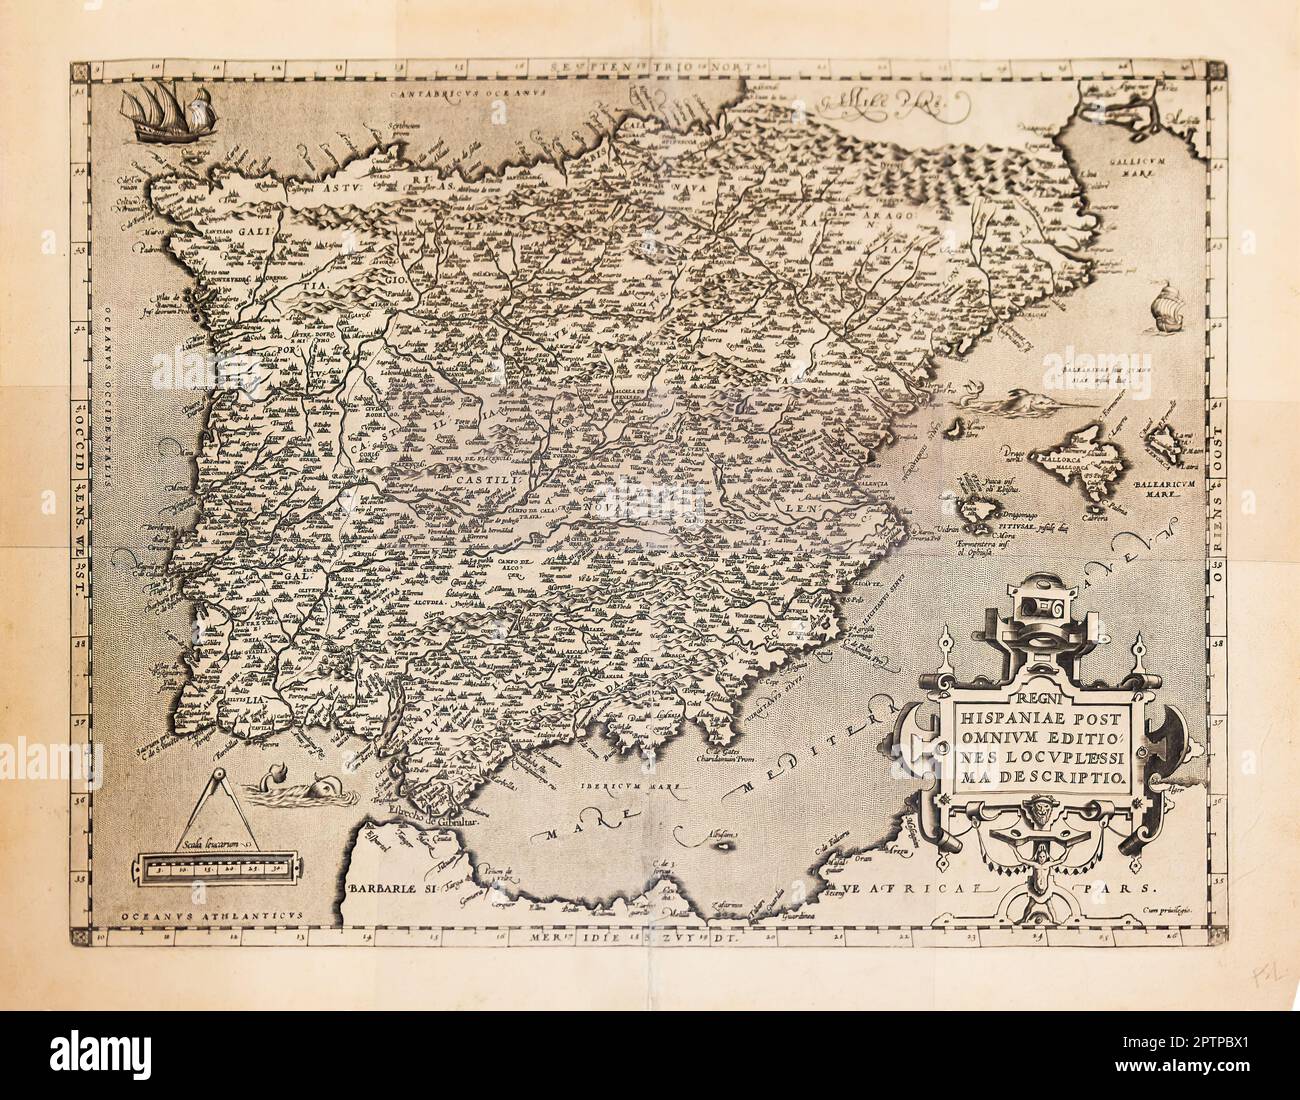 Huelva, Spanien - 22. April 2023: Originale Karte aus dem 1579., 16. Jahrhundert, handgefertigt auf Pergament, repräsentiert die iberische Halbinsel, Spanien und Portugal zum Zeitpunkt Stockfoto